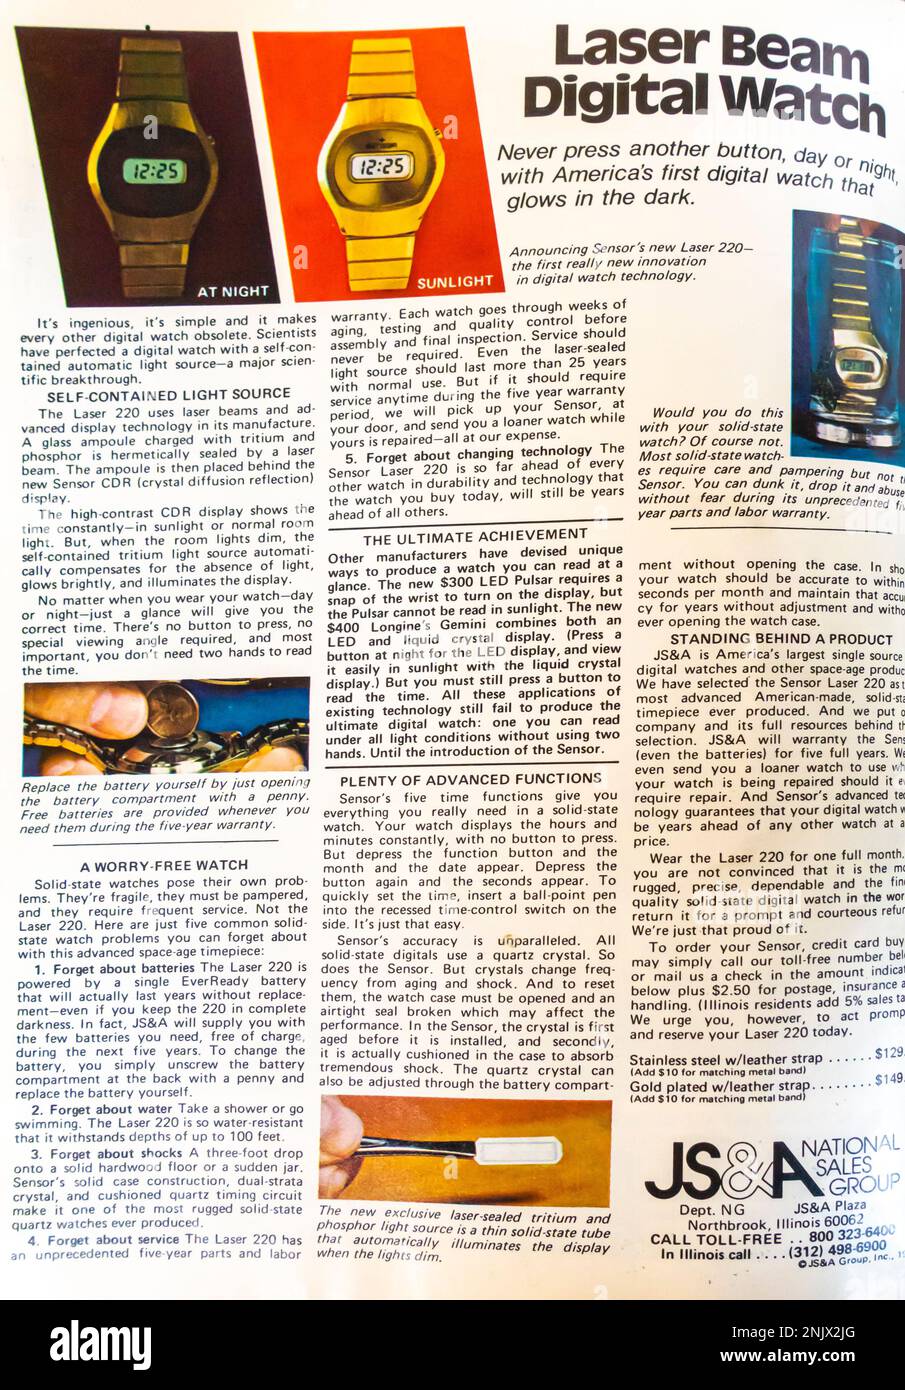 Werbung für JS & A Vertriebsgruppe – Laser Beam Digitaluhr – Sensor Laser 200 – LED-Uhren in einem Magazin in NatGeo, Juni 1976 Stockfoto